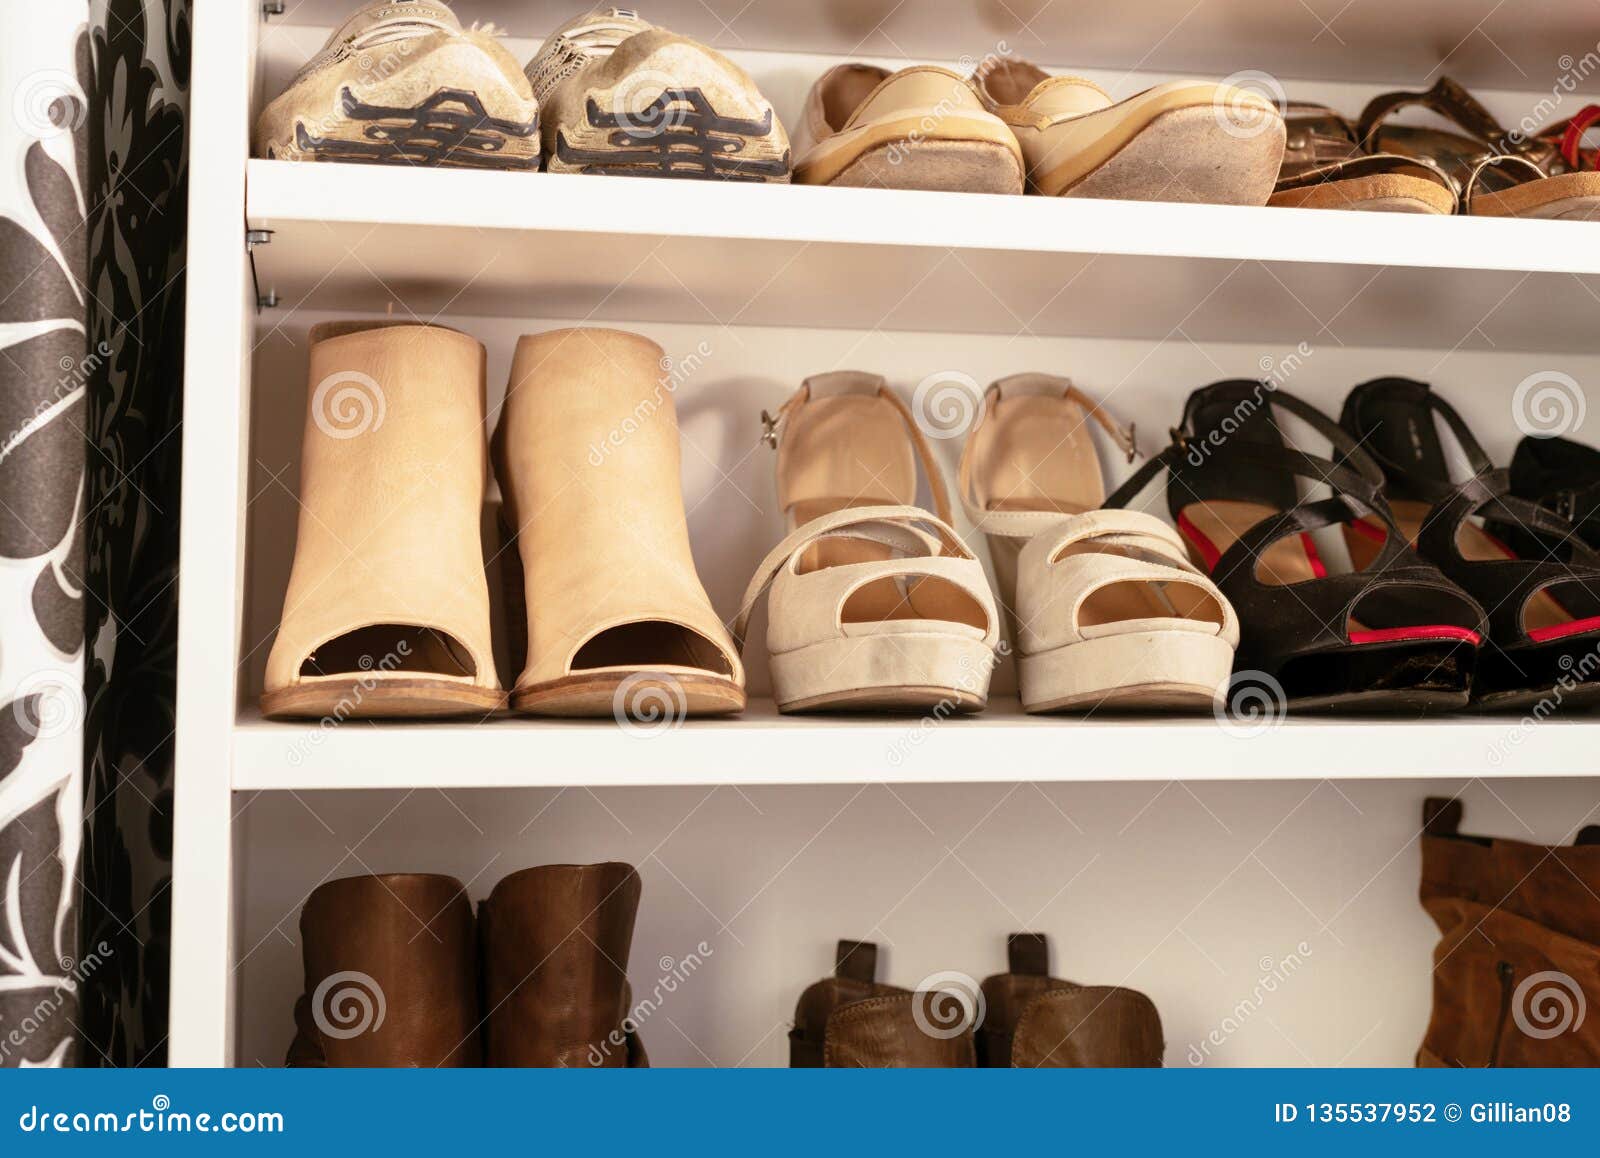 Organised Wardrobe The Shoe Storage Stock Photo Image Of System